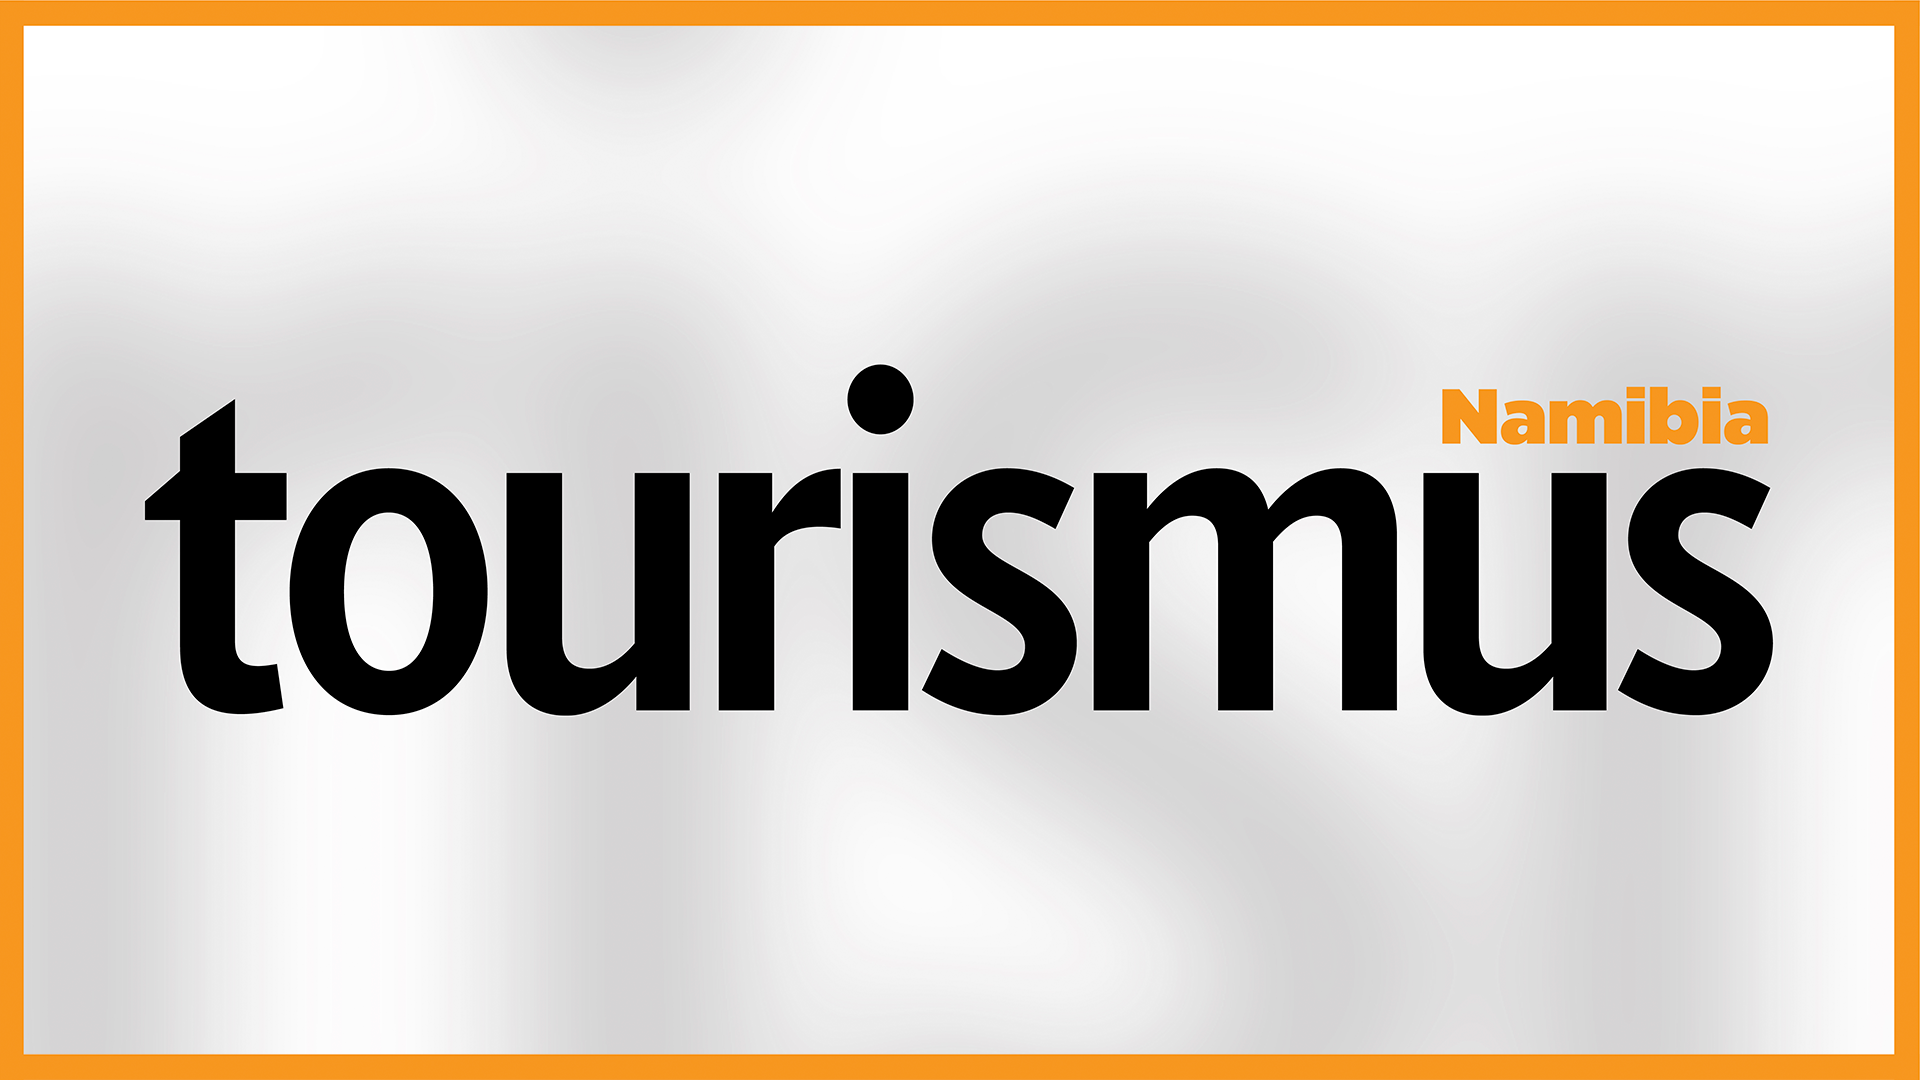 Tourismus Namibia (English) - 14 August 2021